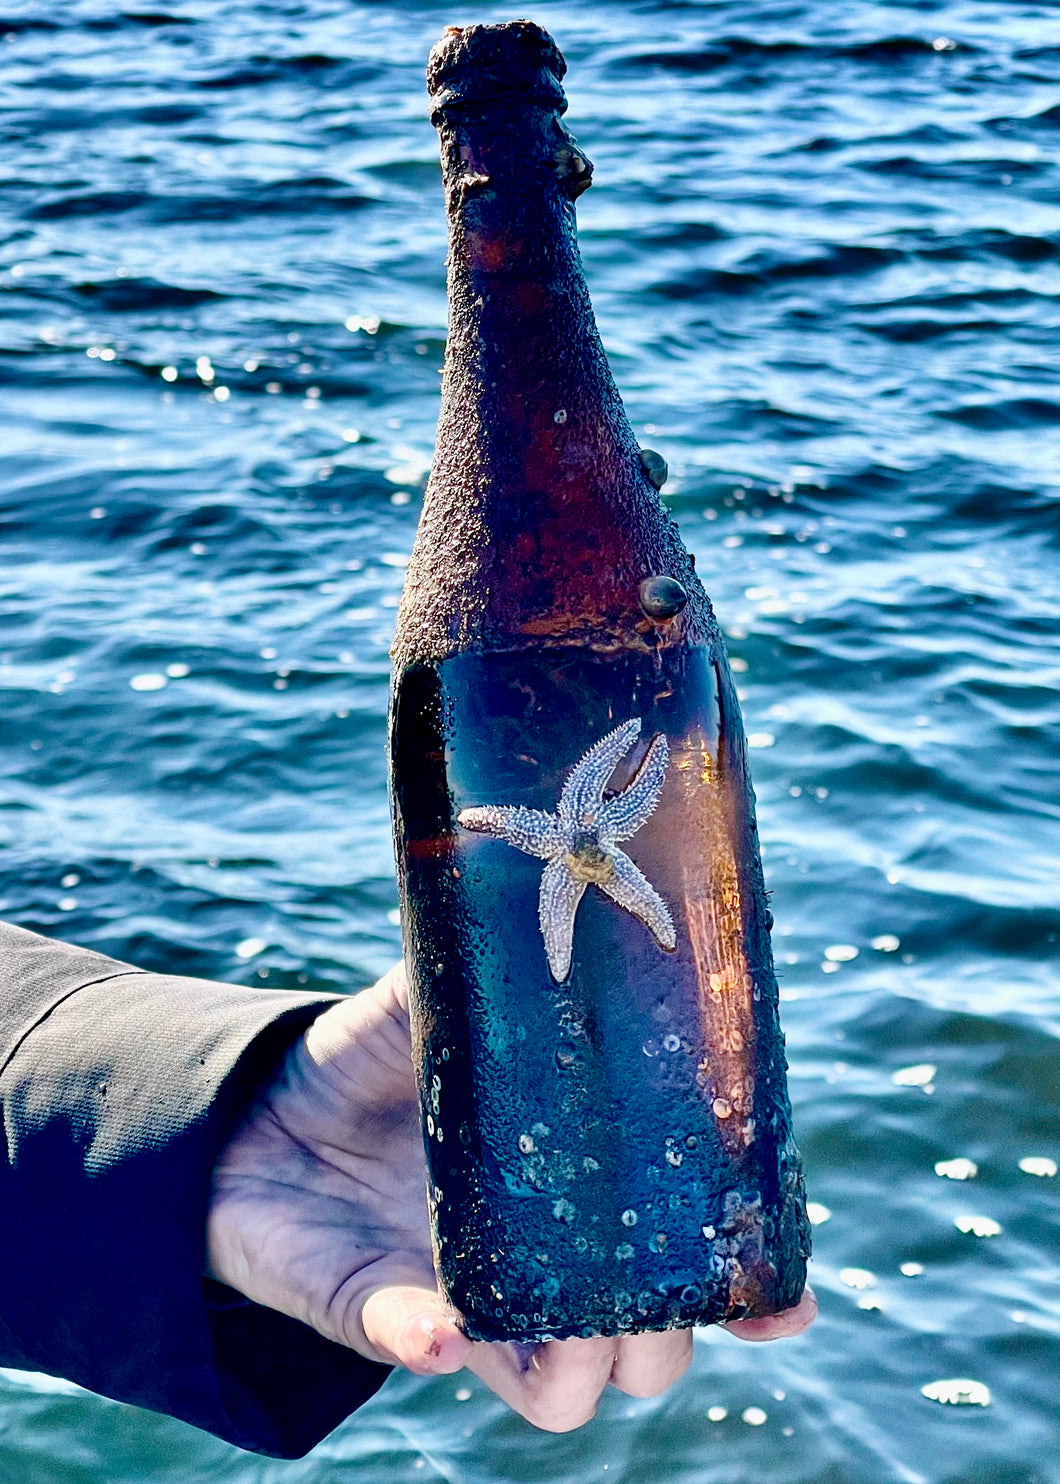 Sea-aged Oistre Cider